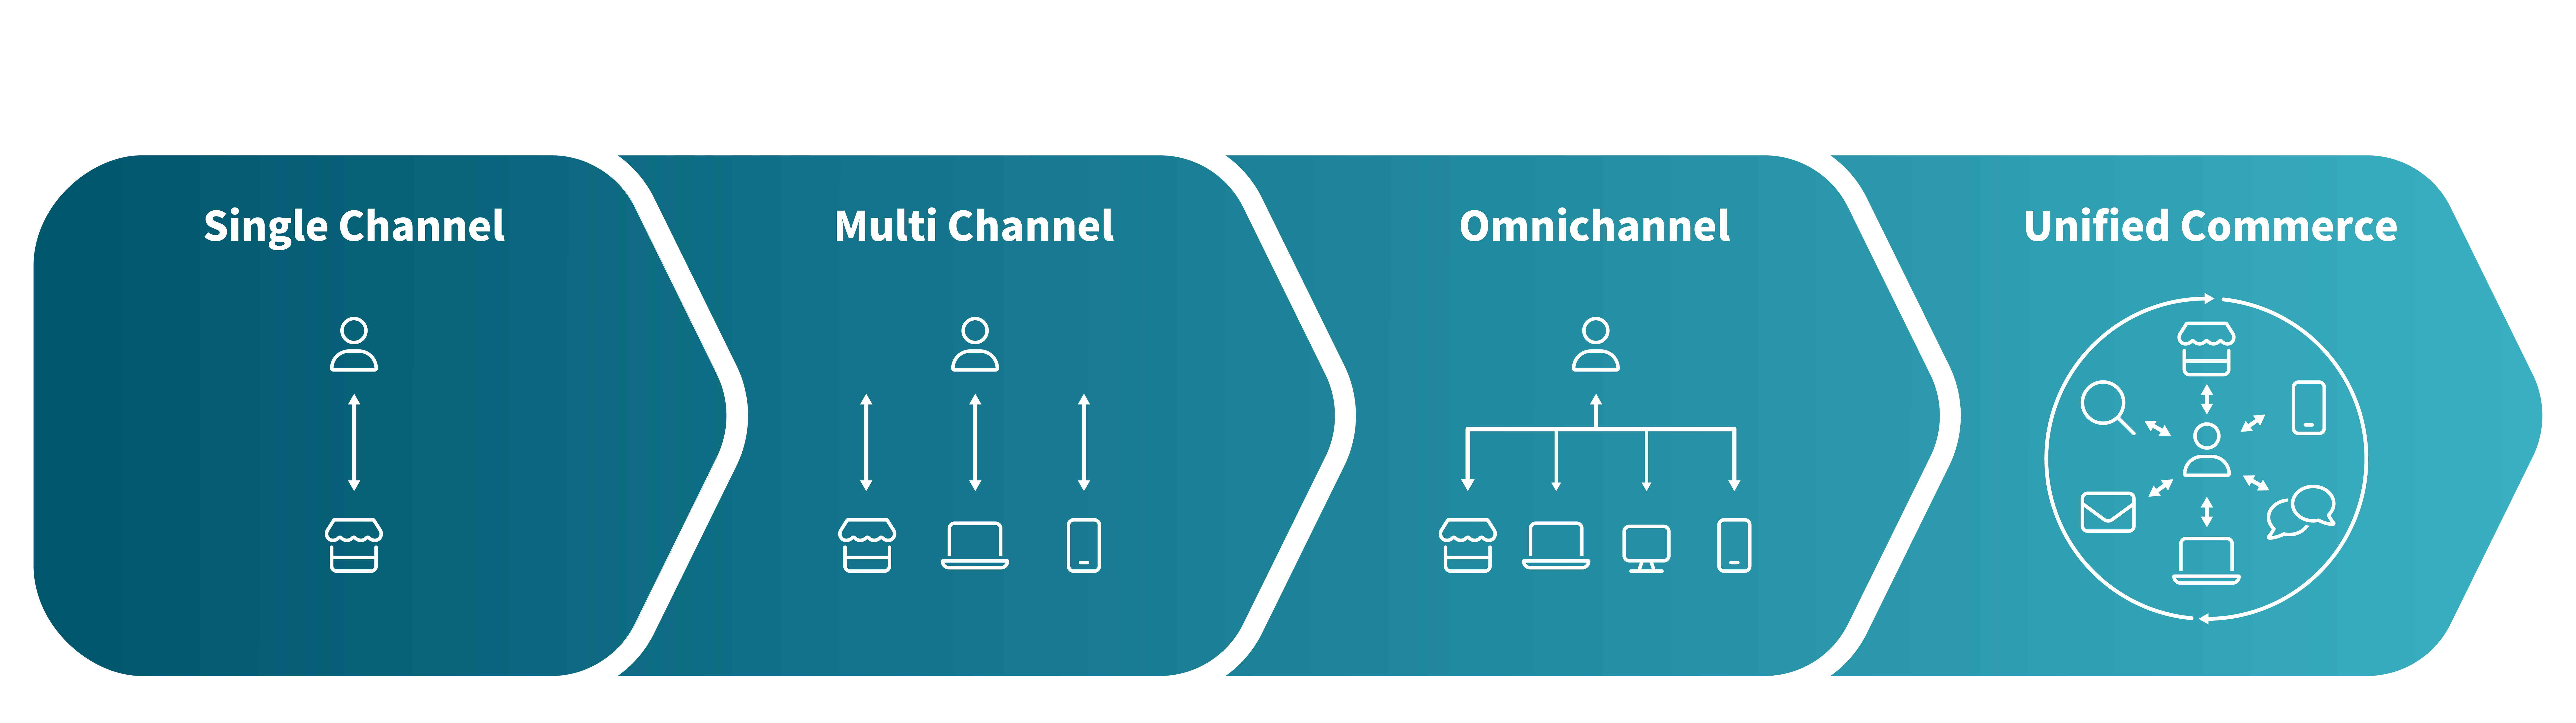 Die Entwicklung von Singlechannel, Multichannel, Omnichannel bis Unified Commerce